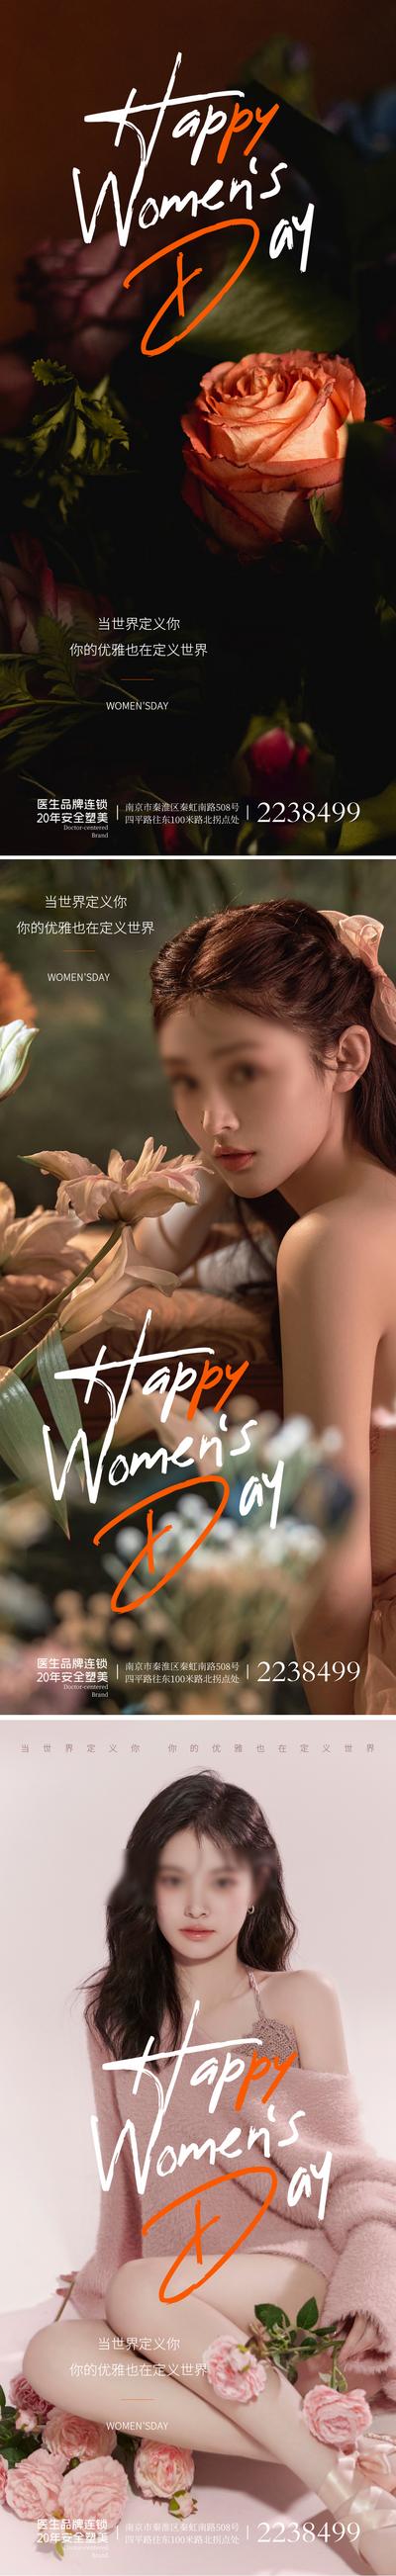 南门网 广告 海报 节日 妇女节 38 鲜花 浪漫 系列